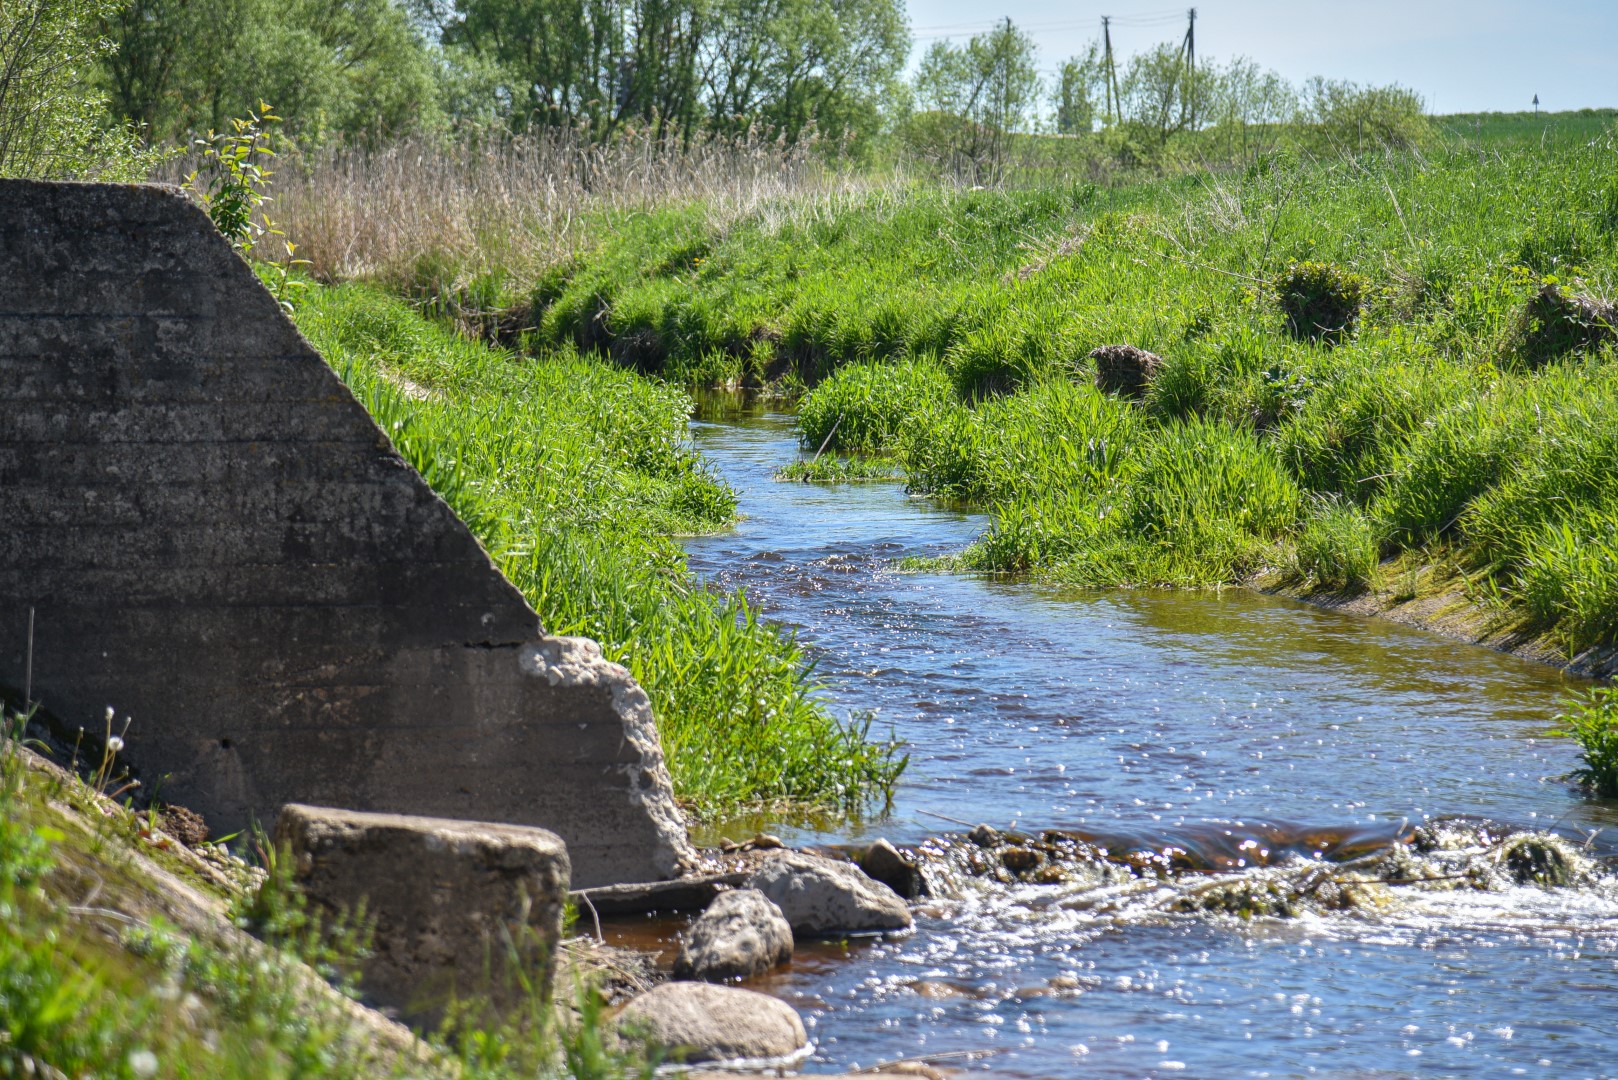 Nusprendus upėms grąžinti senąsias jų vagas, Panevėžio rajone išardytos aštuonios užtvankos, vietinių vadintos kriokliais, bei supilti 306 bunomis vadinami pylimai.